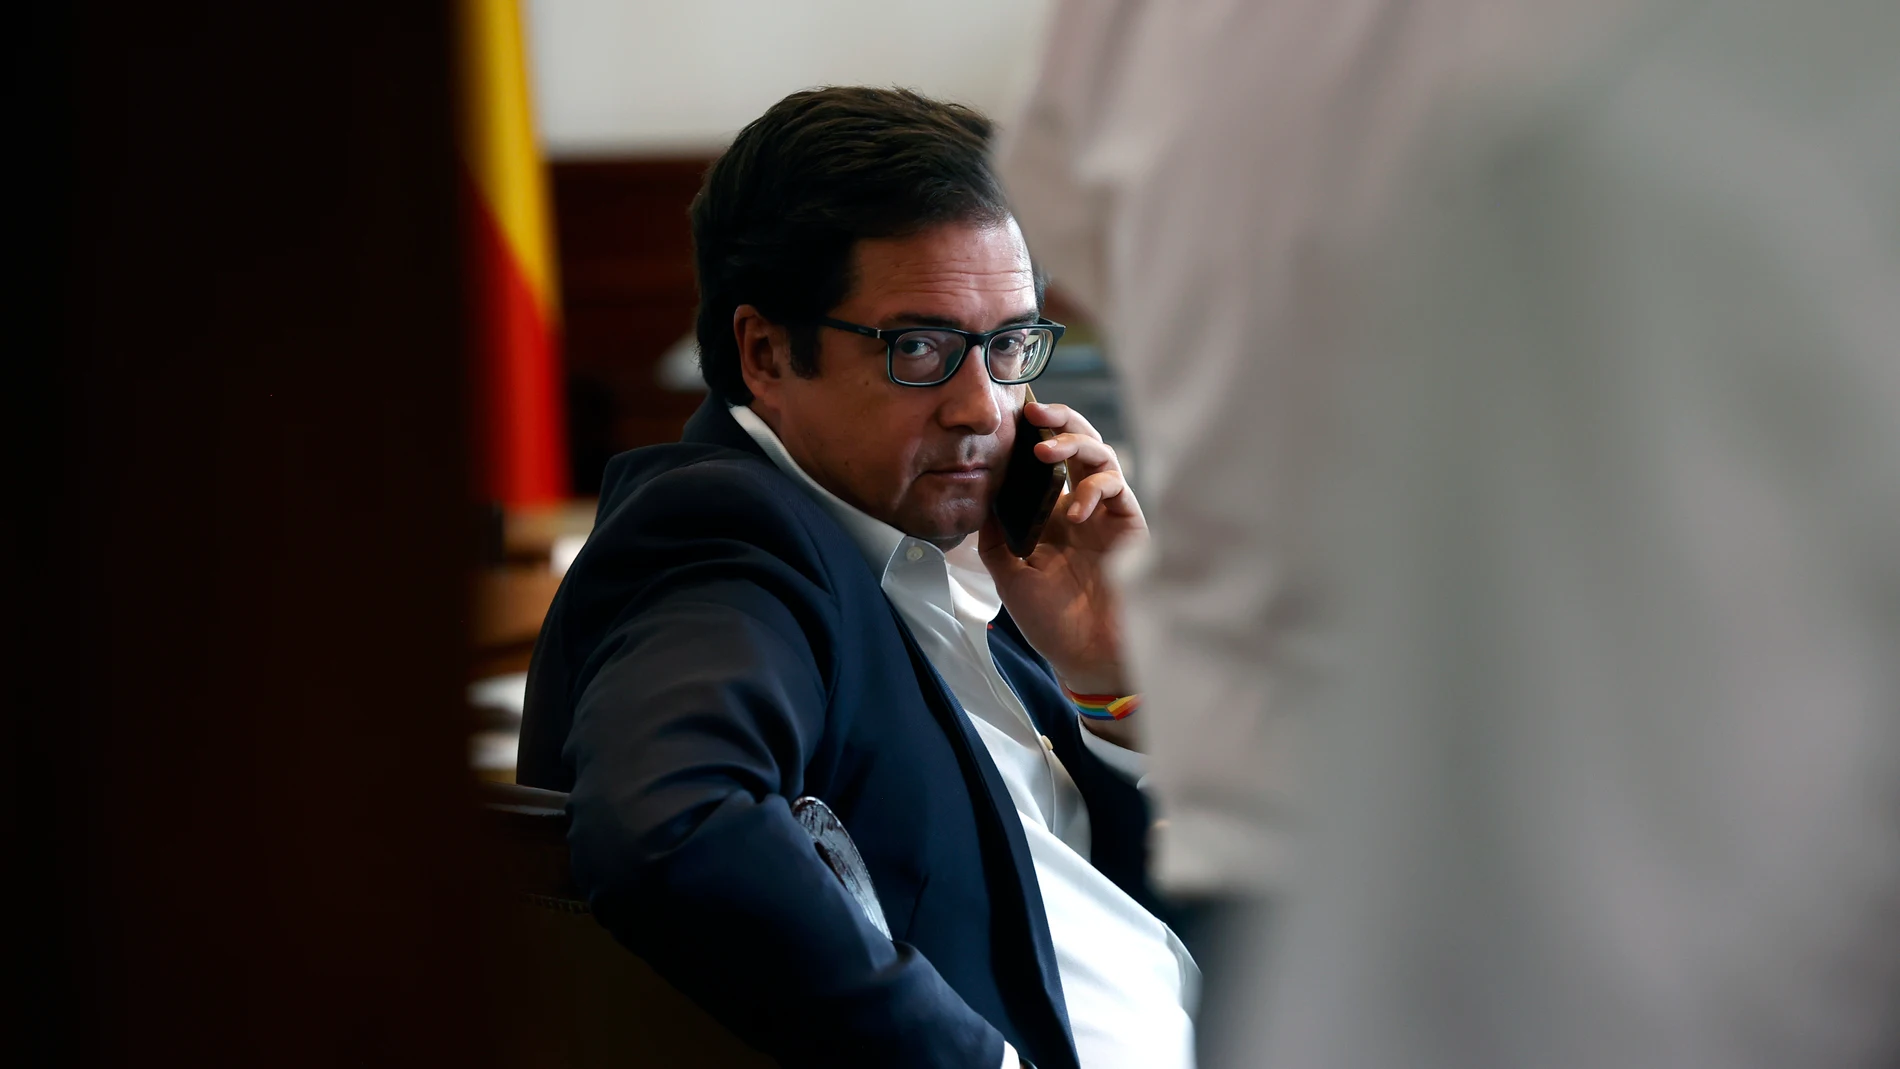 Óscar López (PSOE) conversa por teléfono al recoger su acta en el Congreso de los Diputados